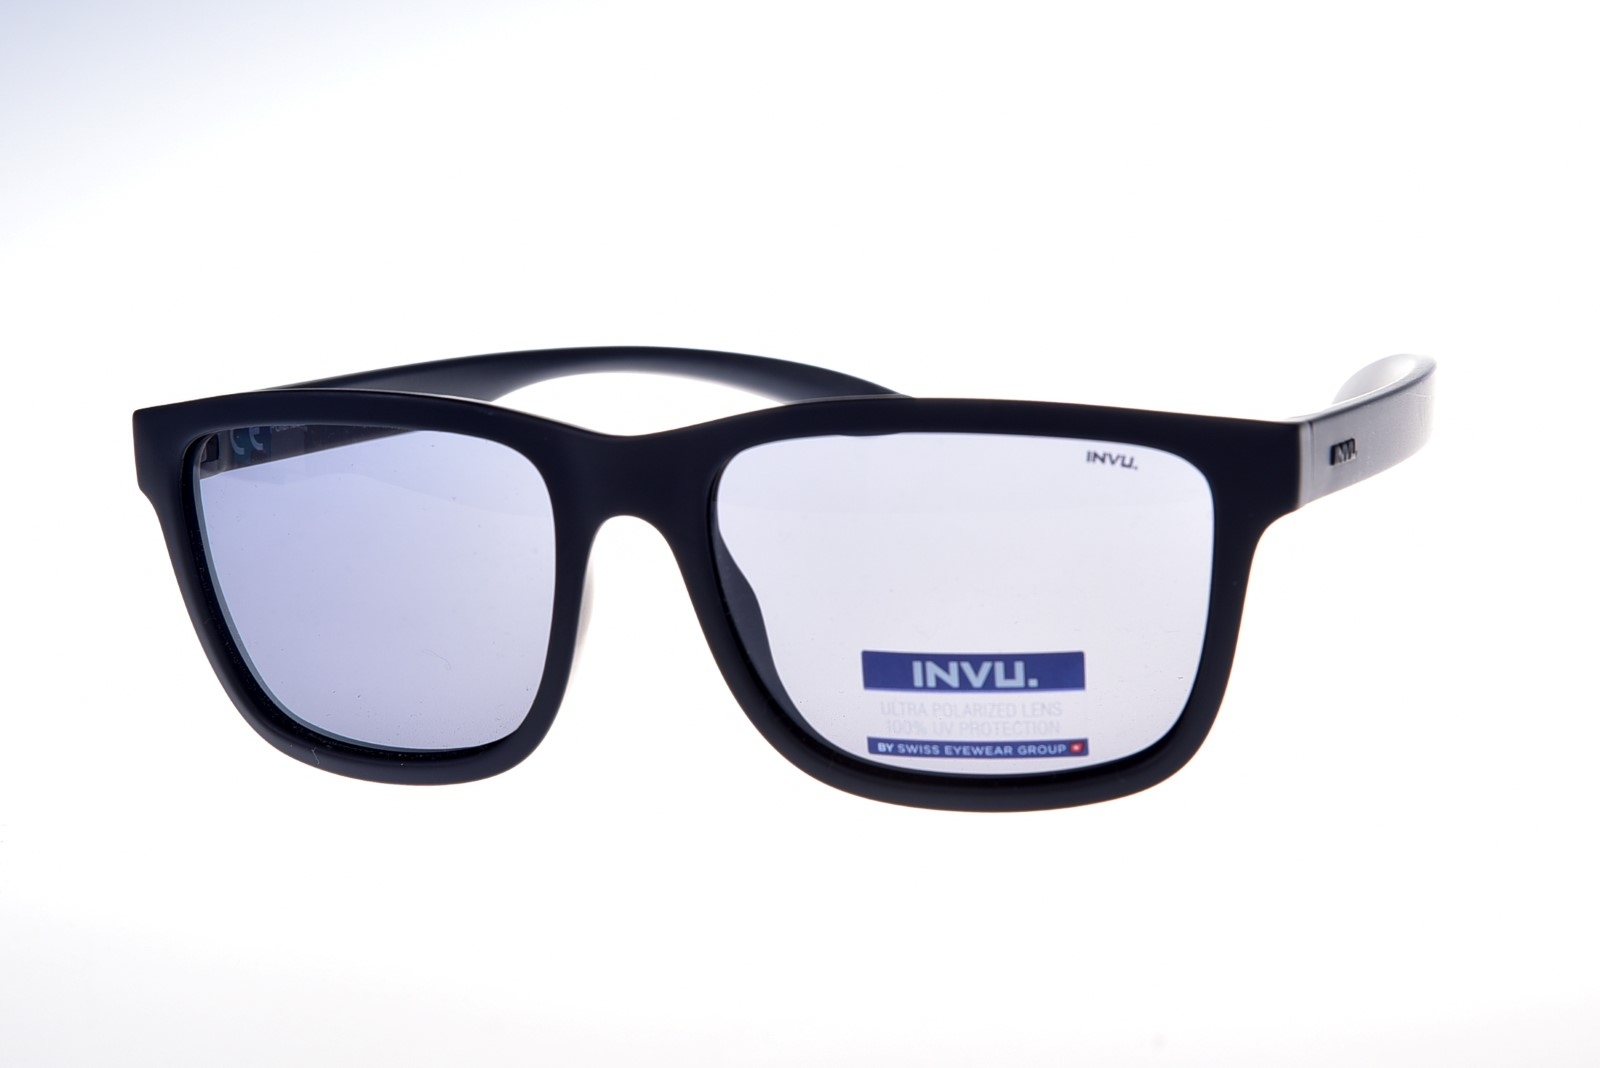 INVU. Active A2000A - Pánske slnečné okuliare